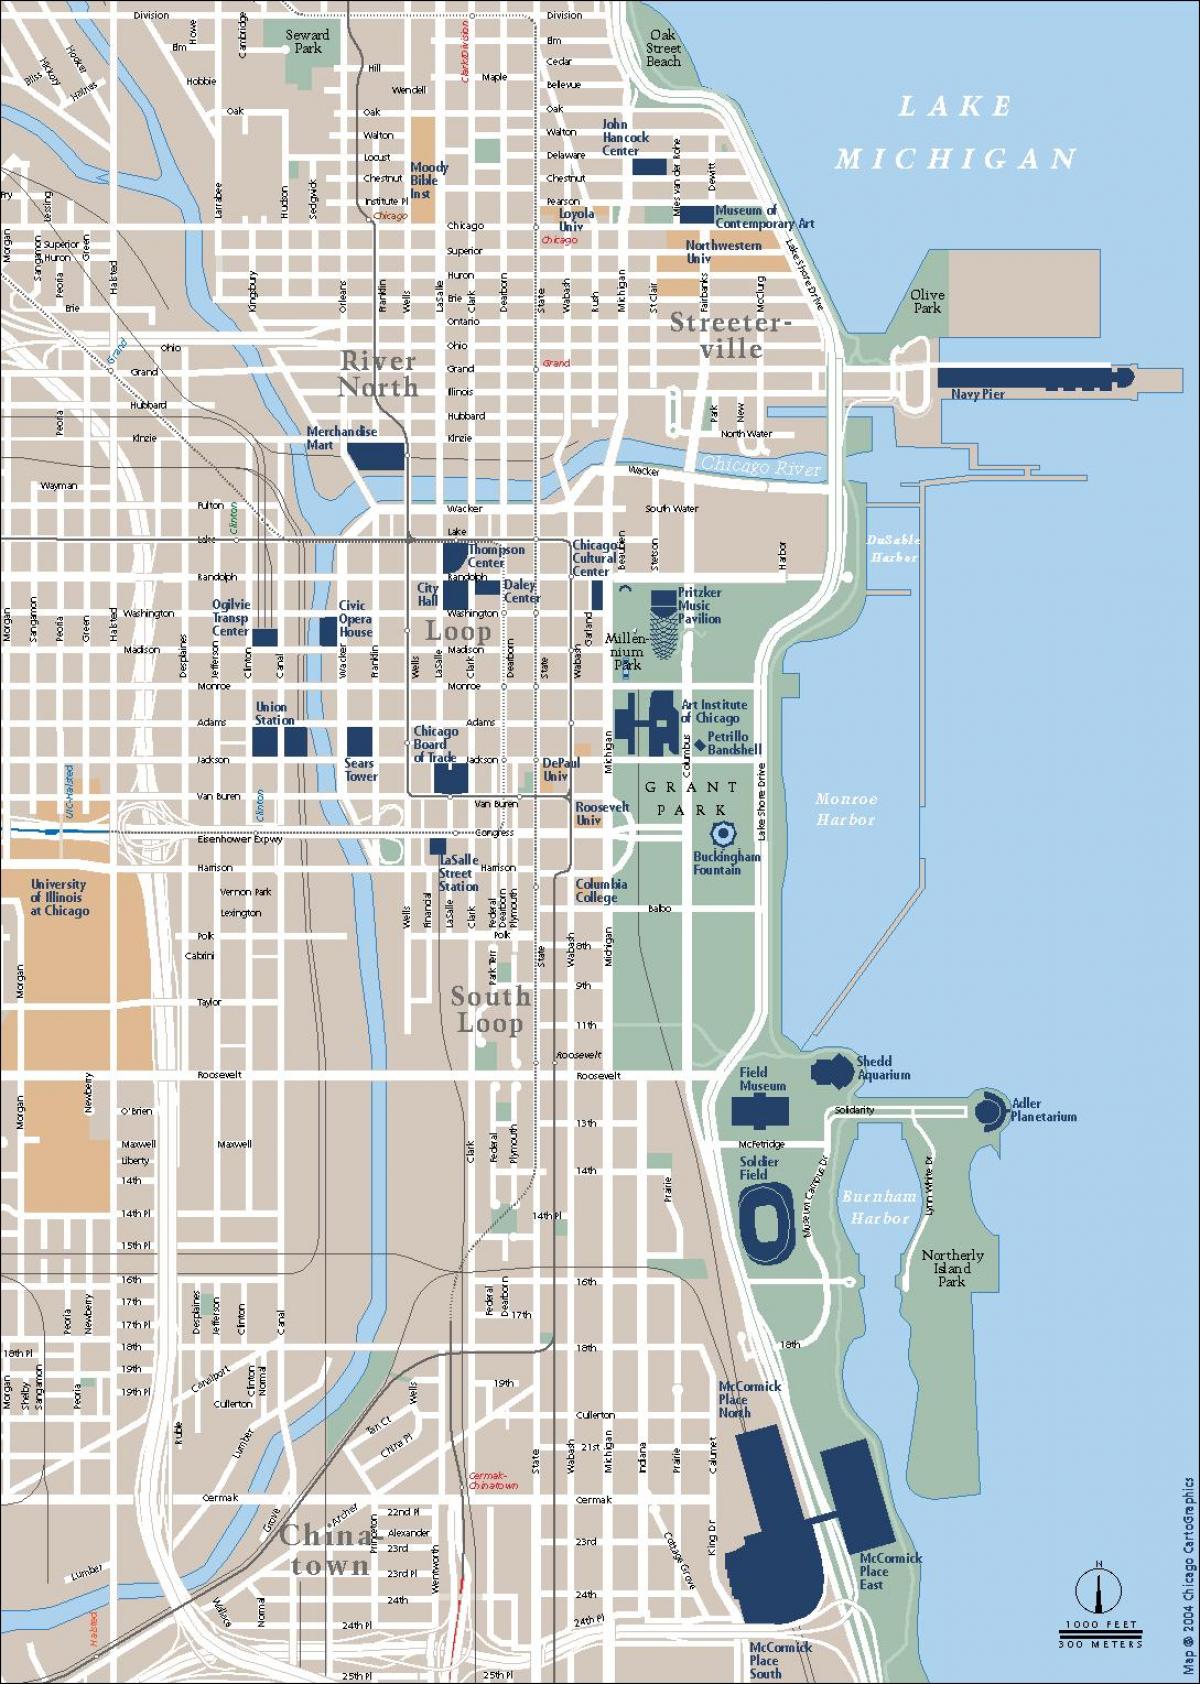 交通シカゴ地図